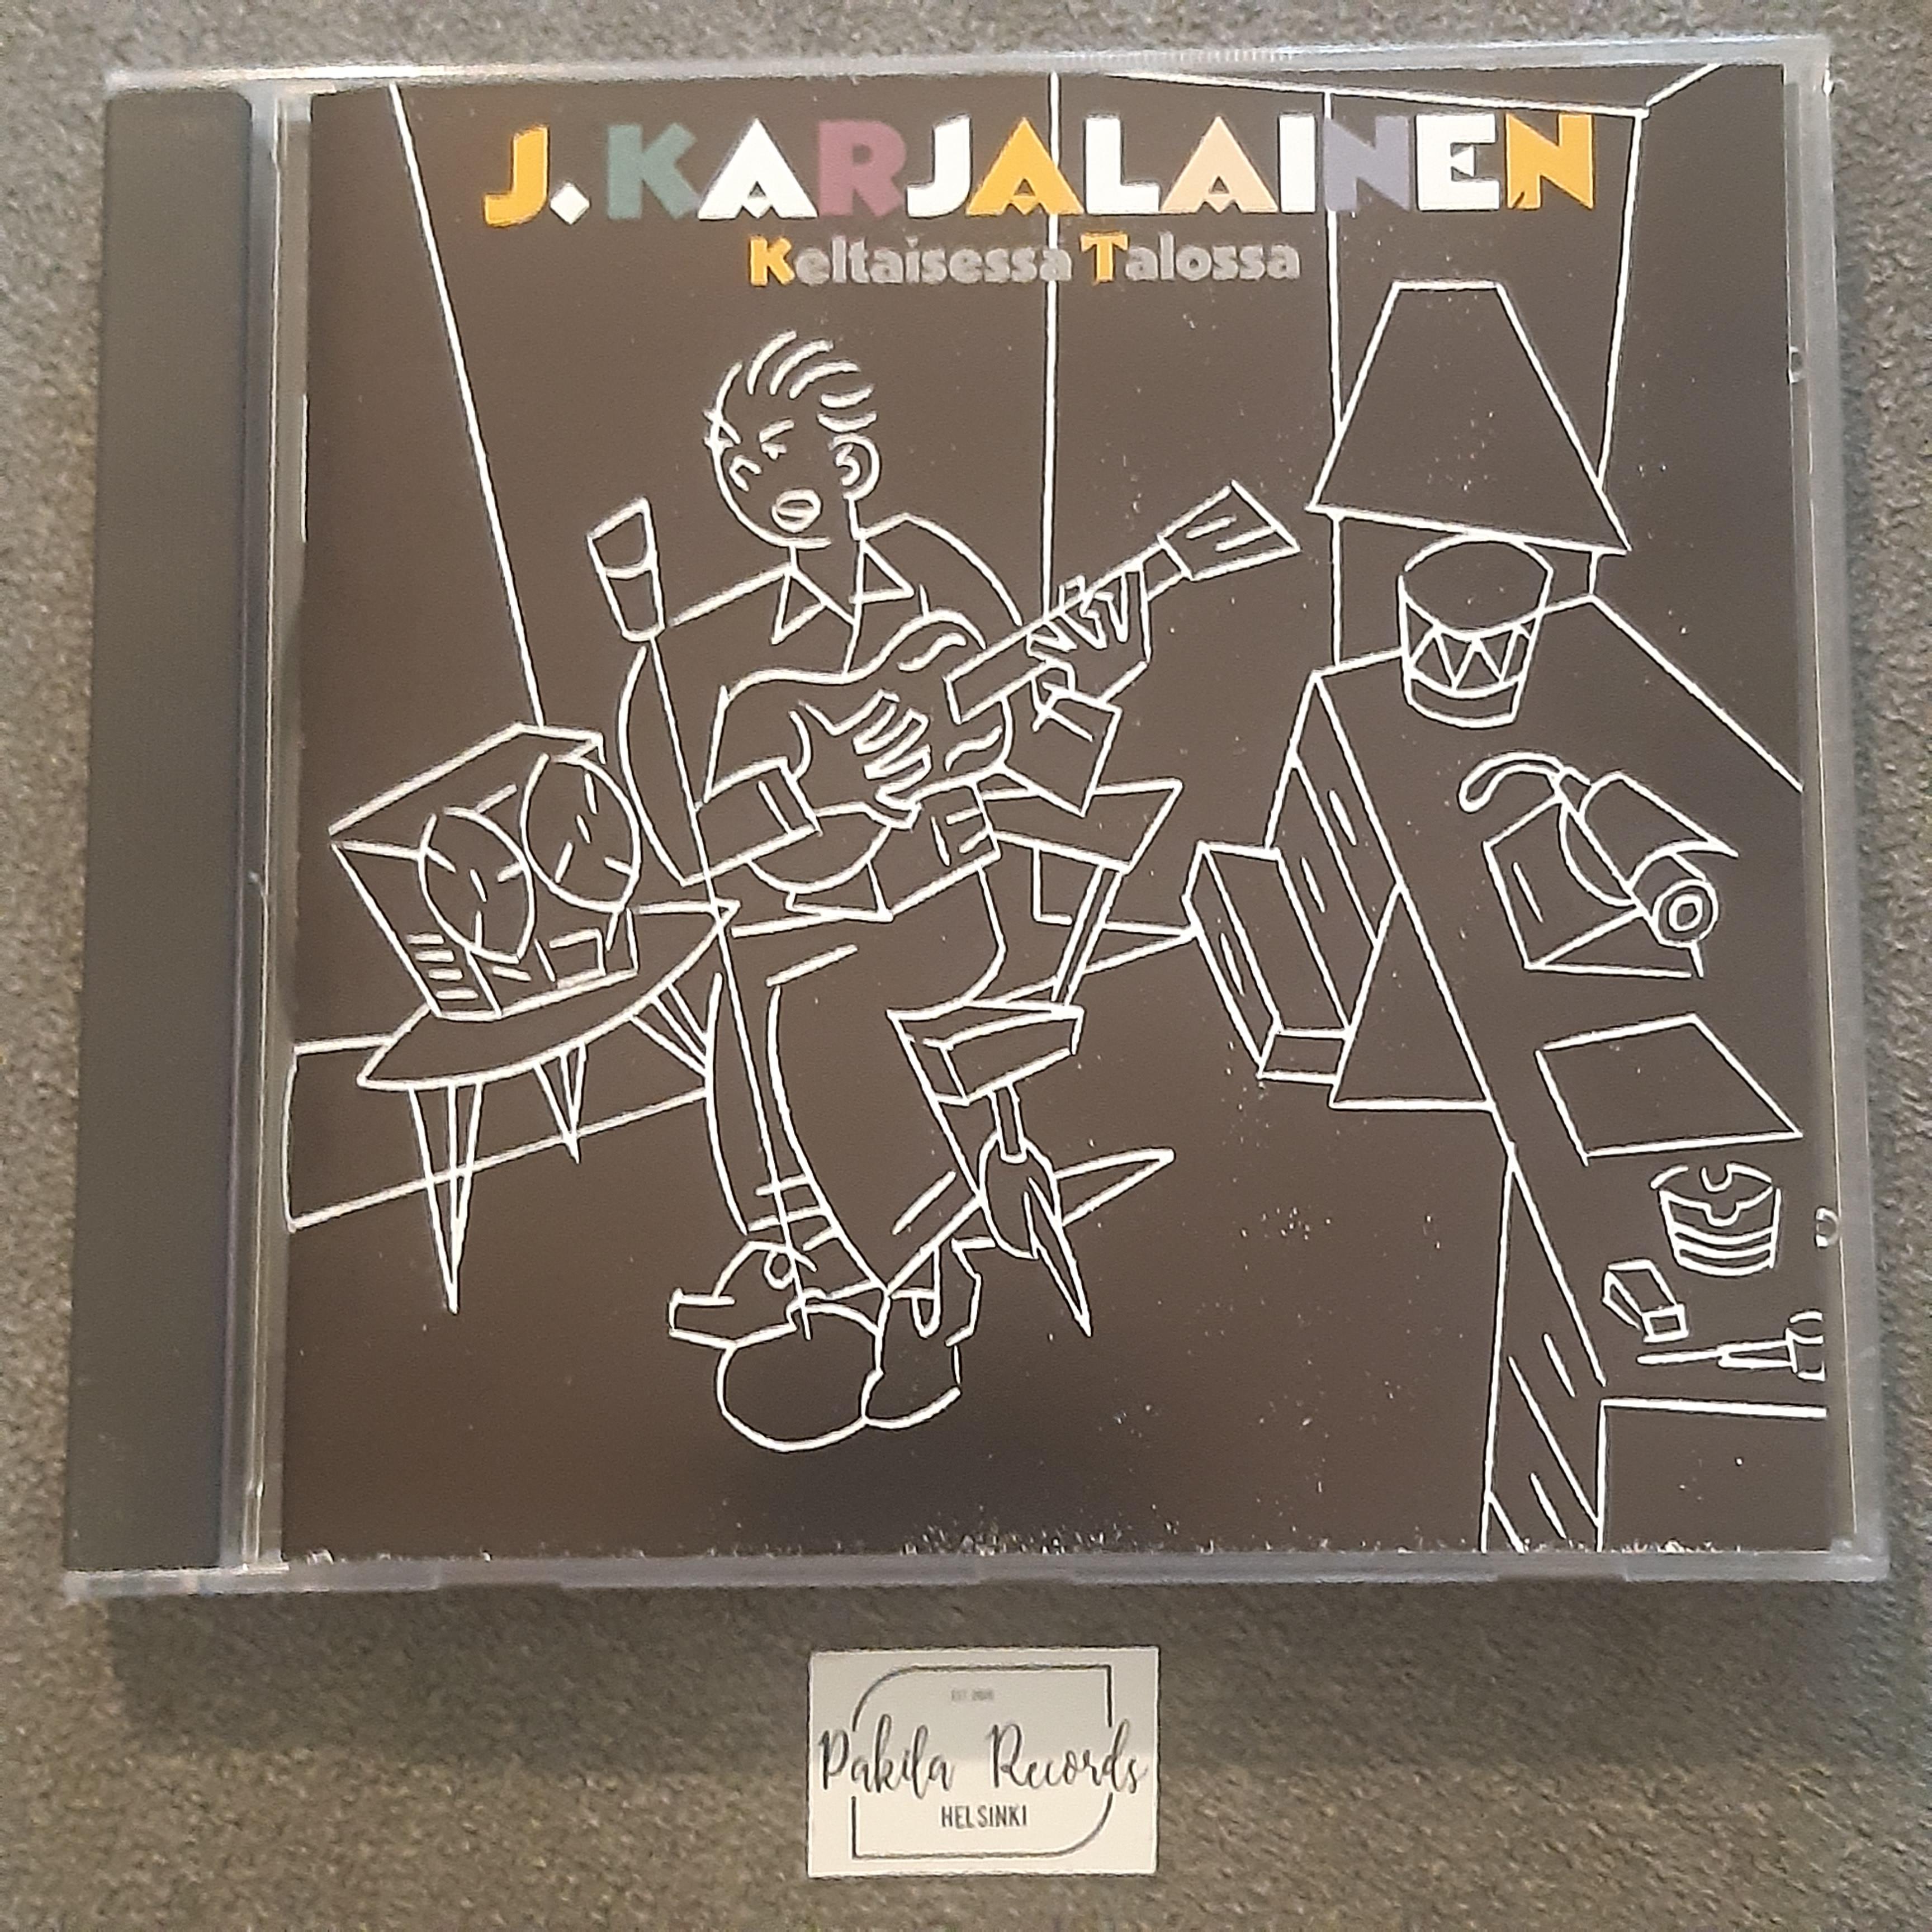 J. Karjalainen - Keltaisessa talossa - CD (käytetty)